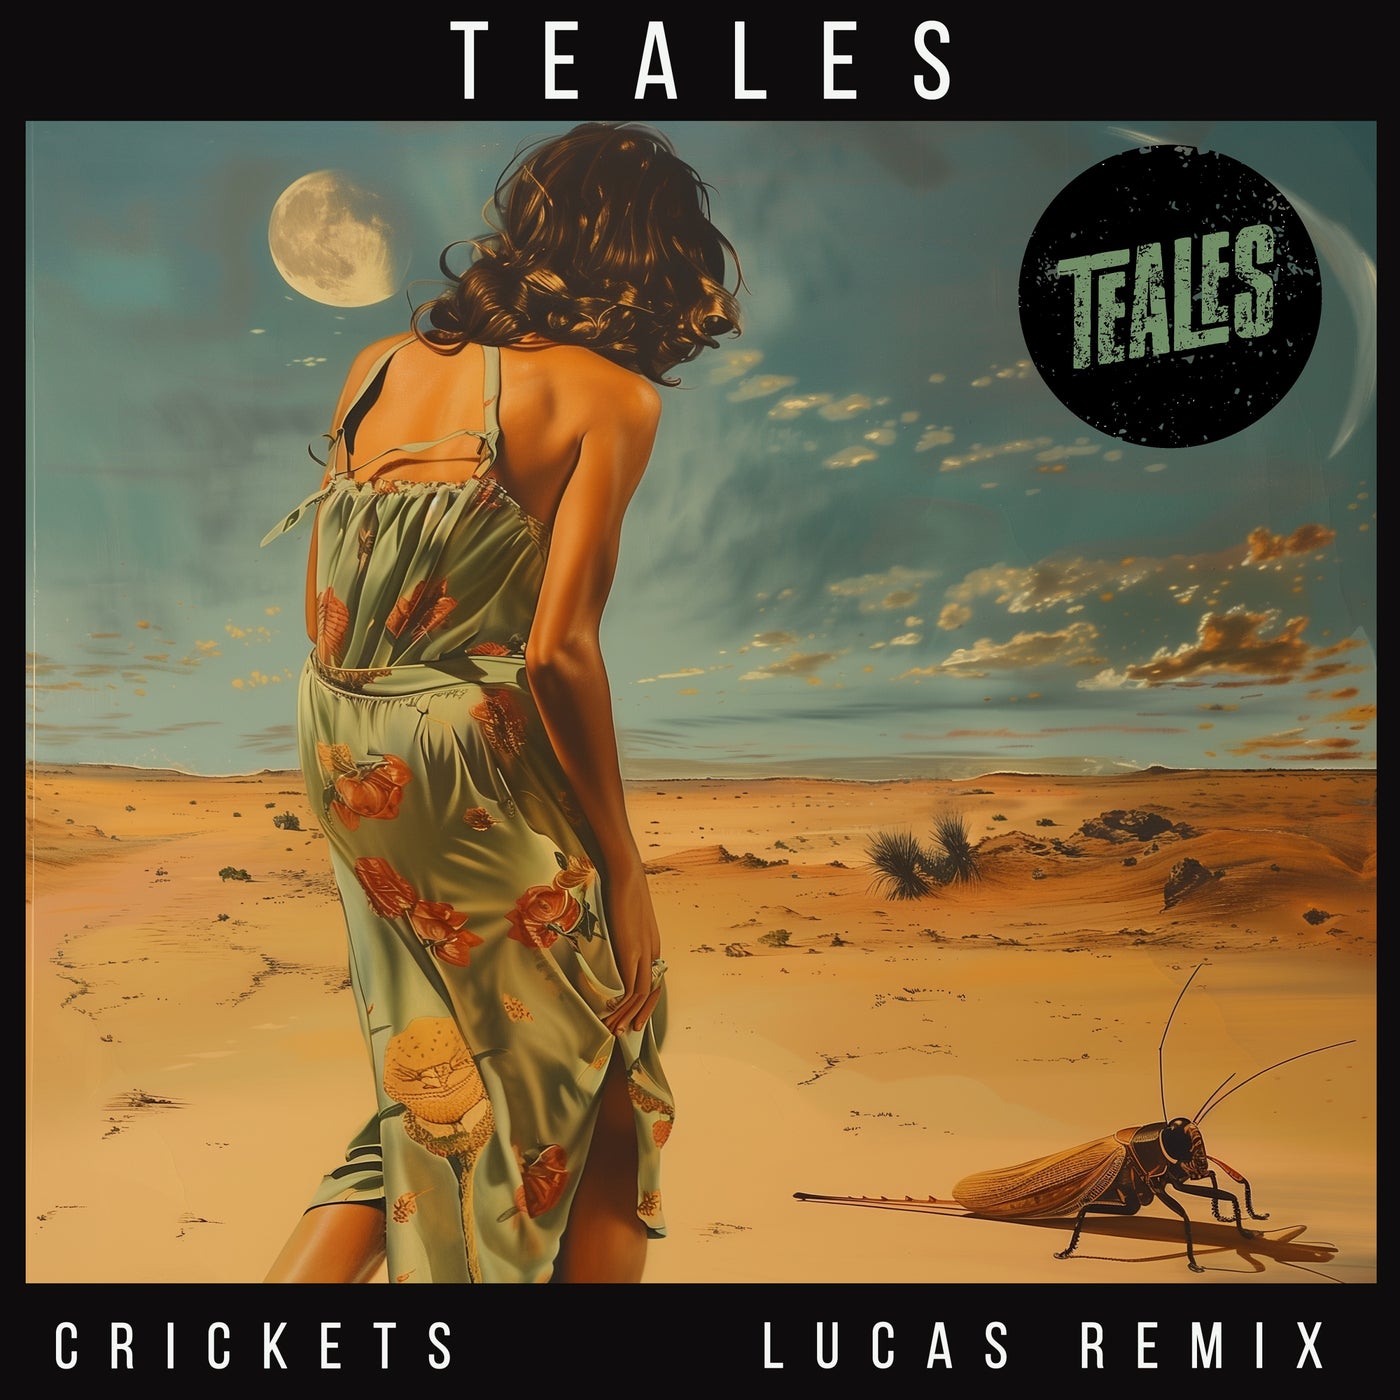 Crickets (Lucas Remix)